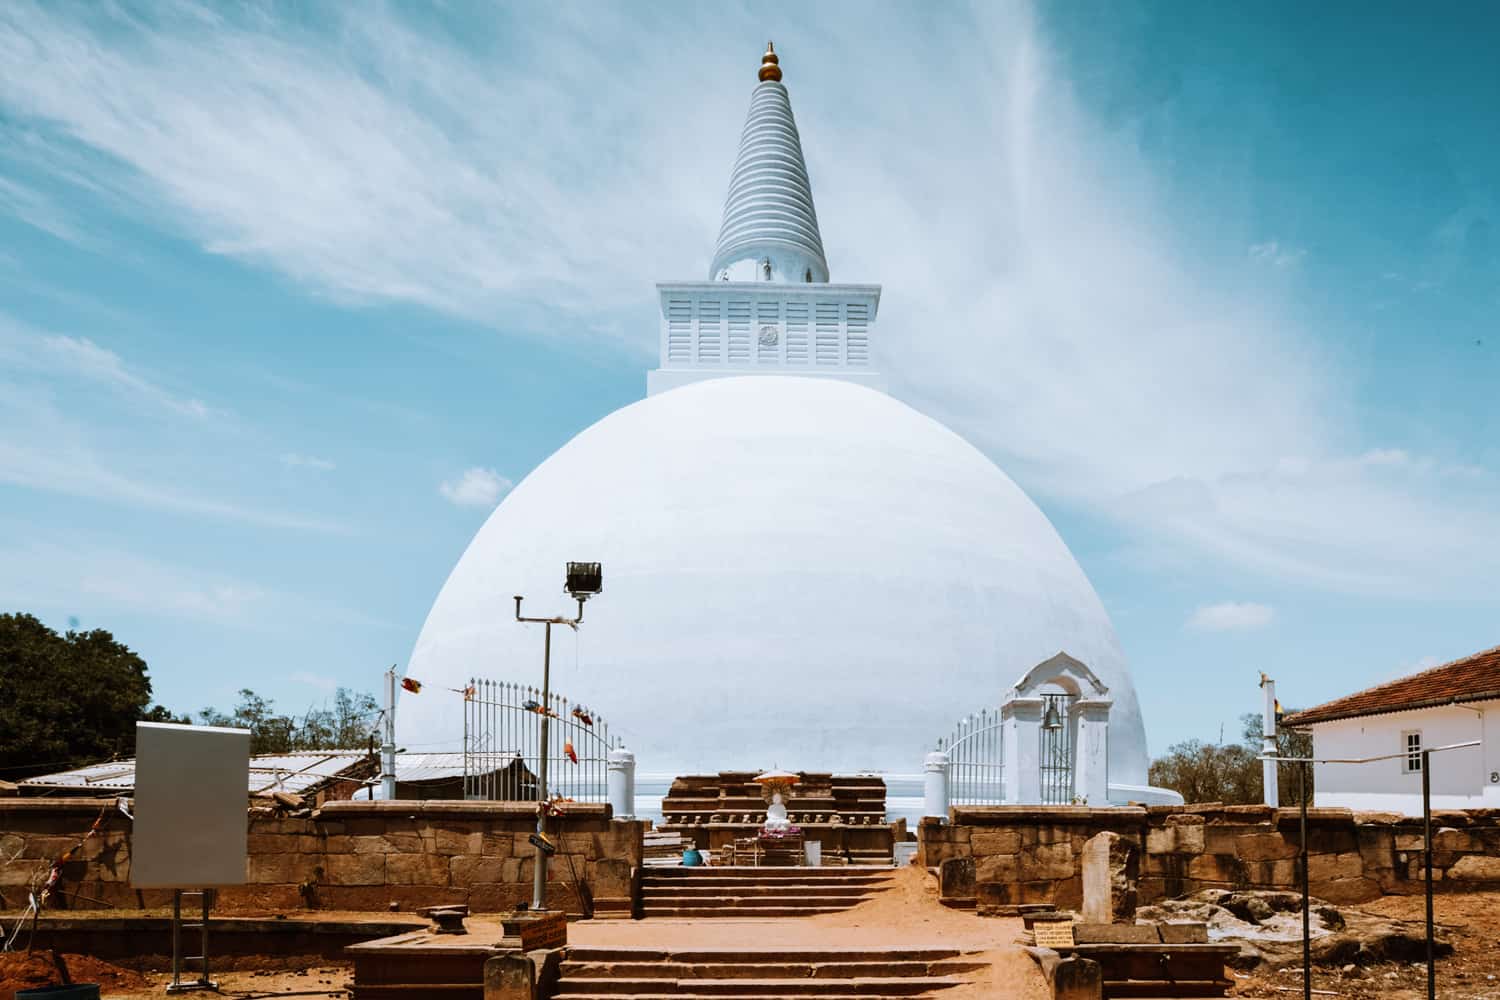 Mirisavetiya Stupa in Anuradhapura